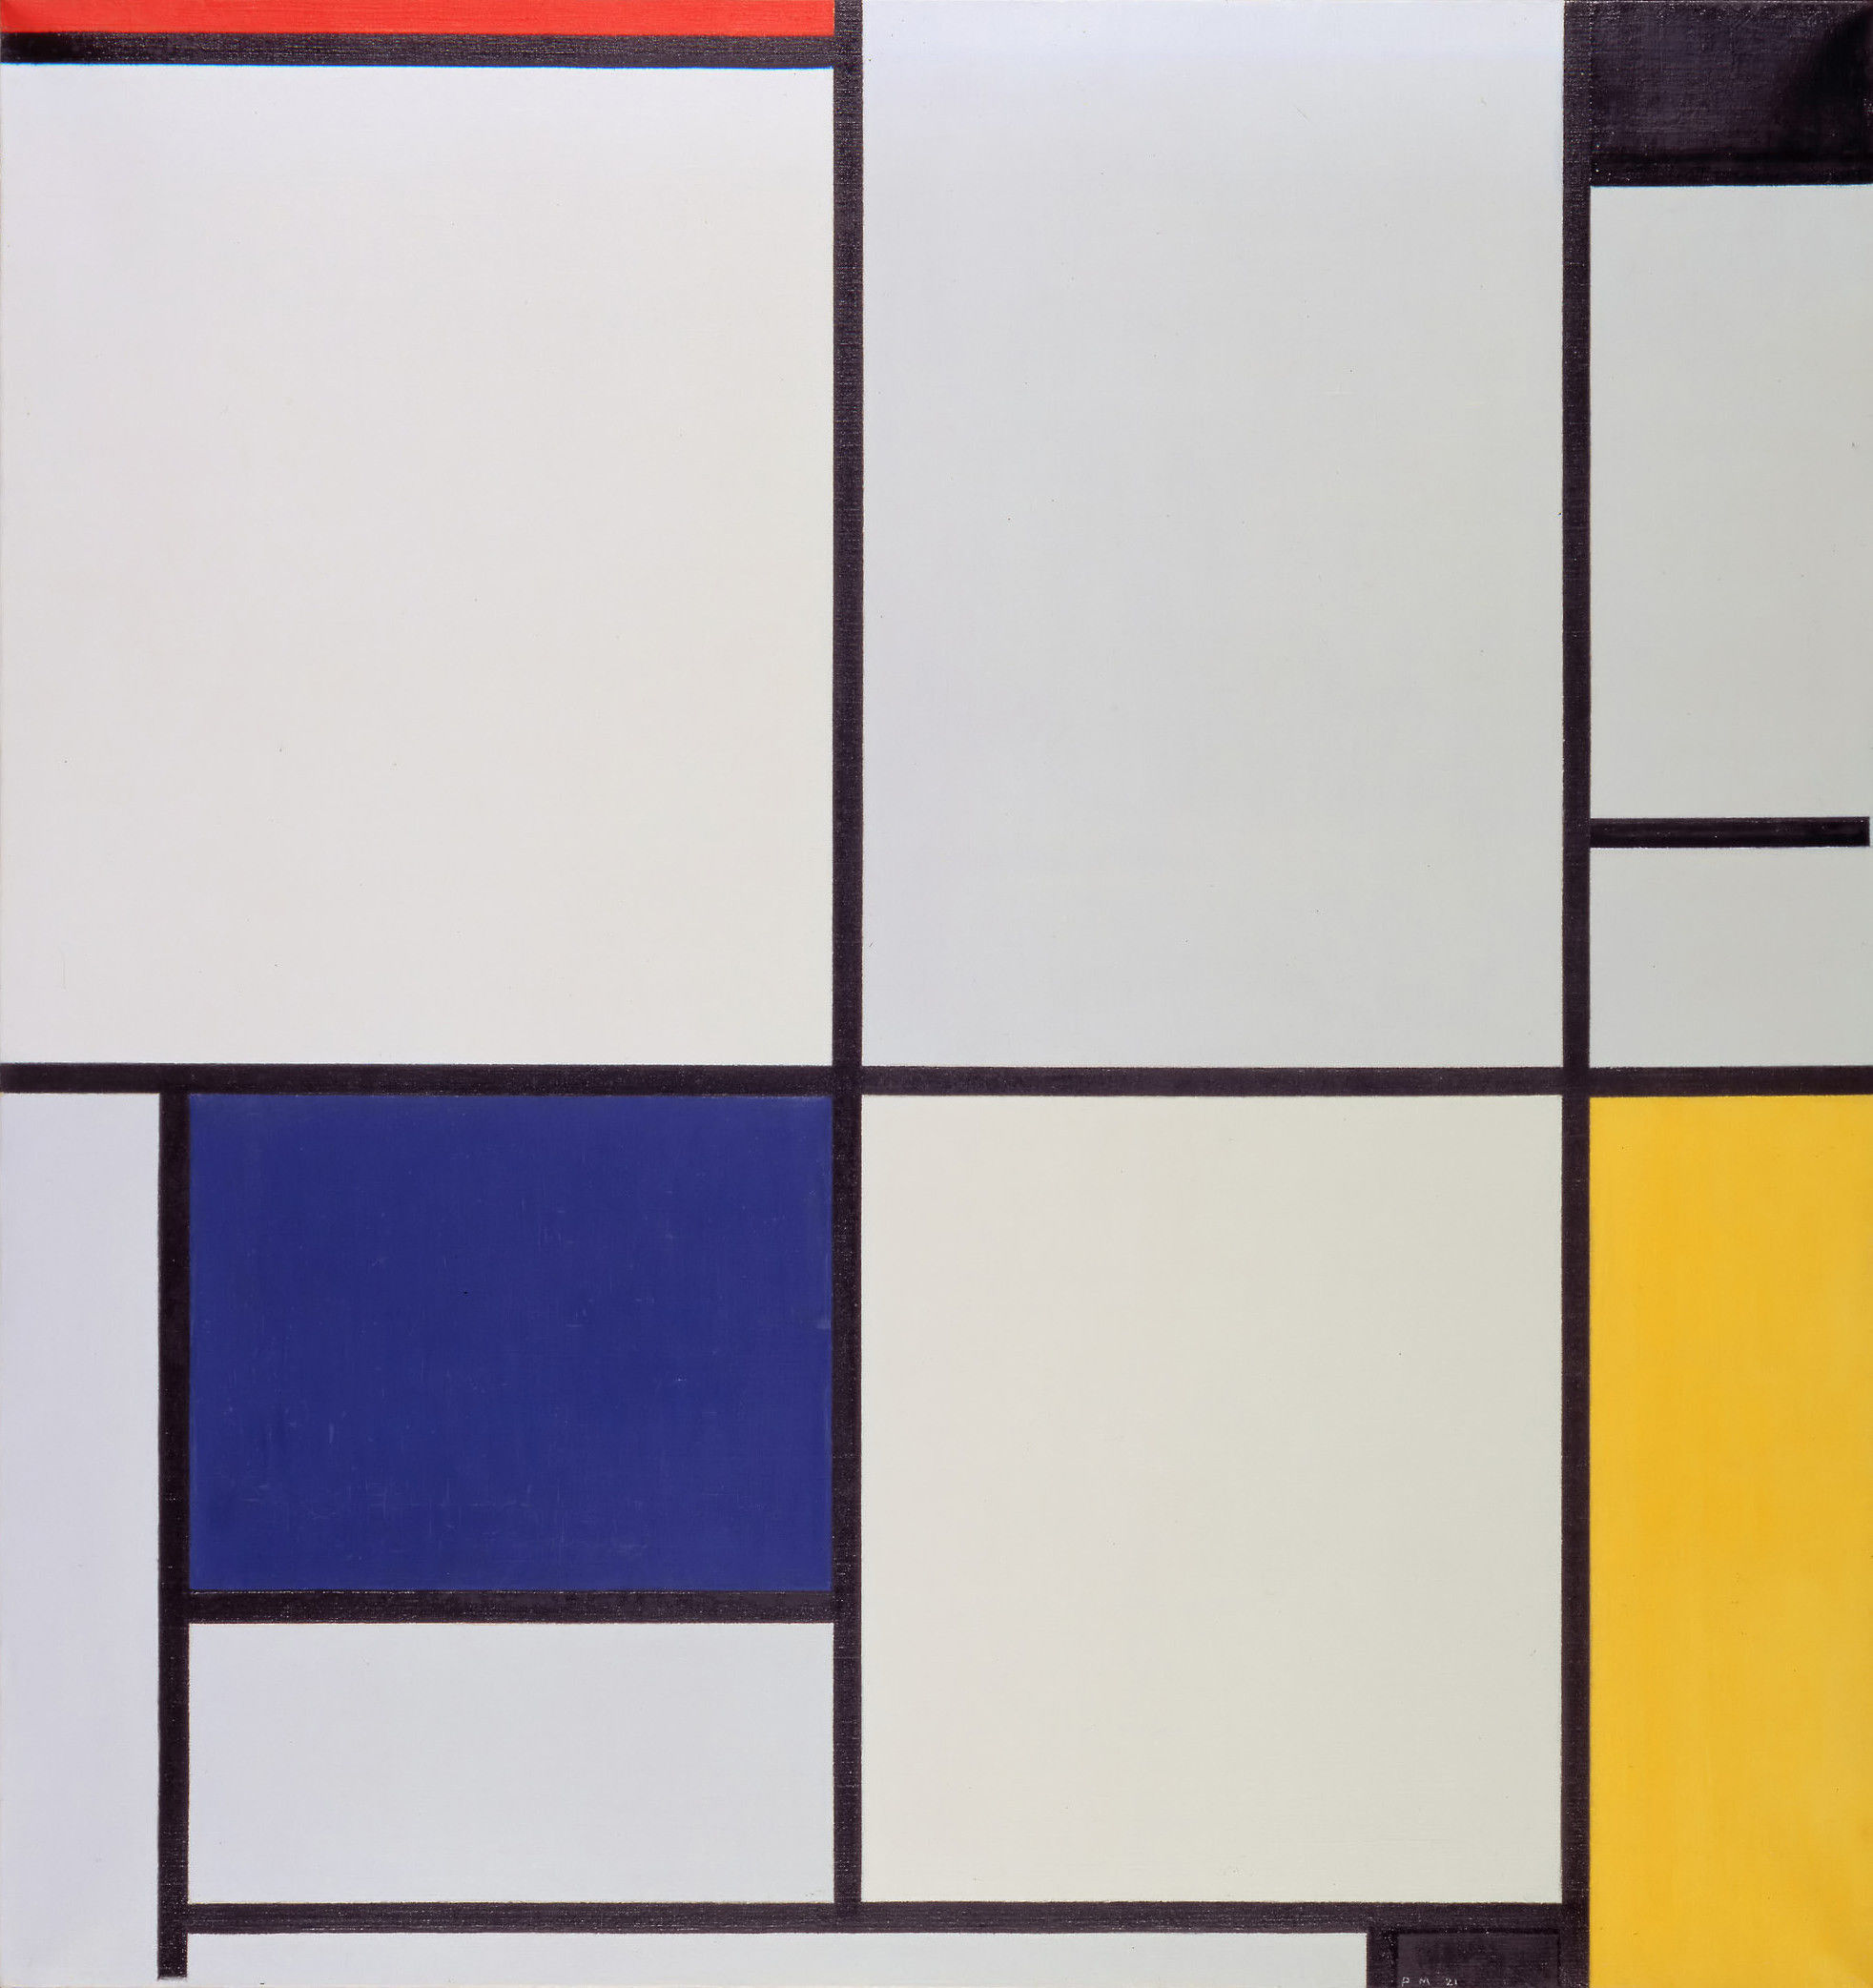 Tableau I, by Piet Mondriaan. The Hague Gemeentemuseum, the Netherlands.